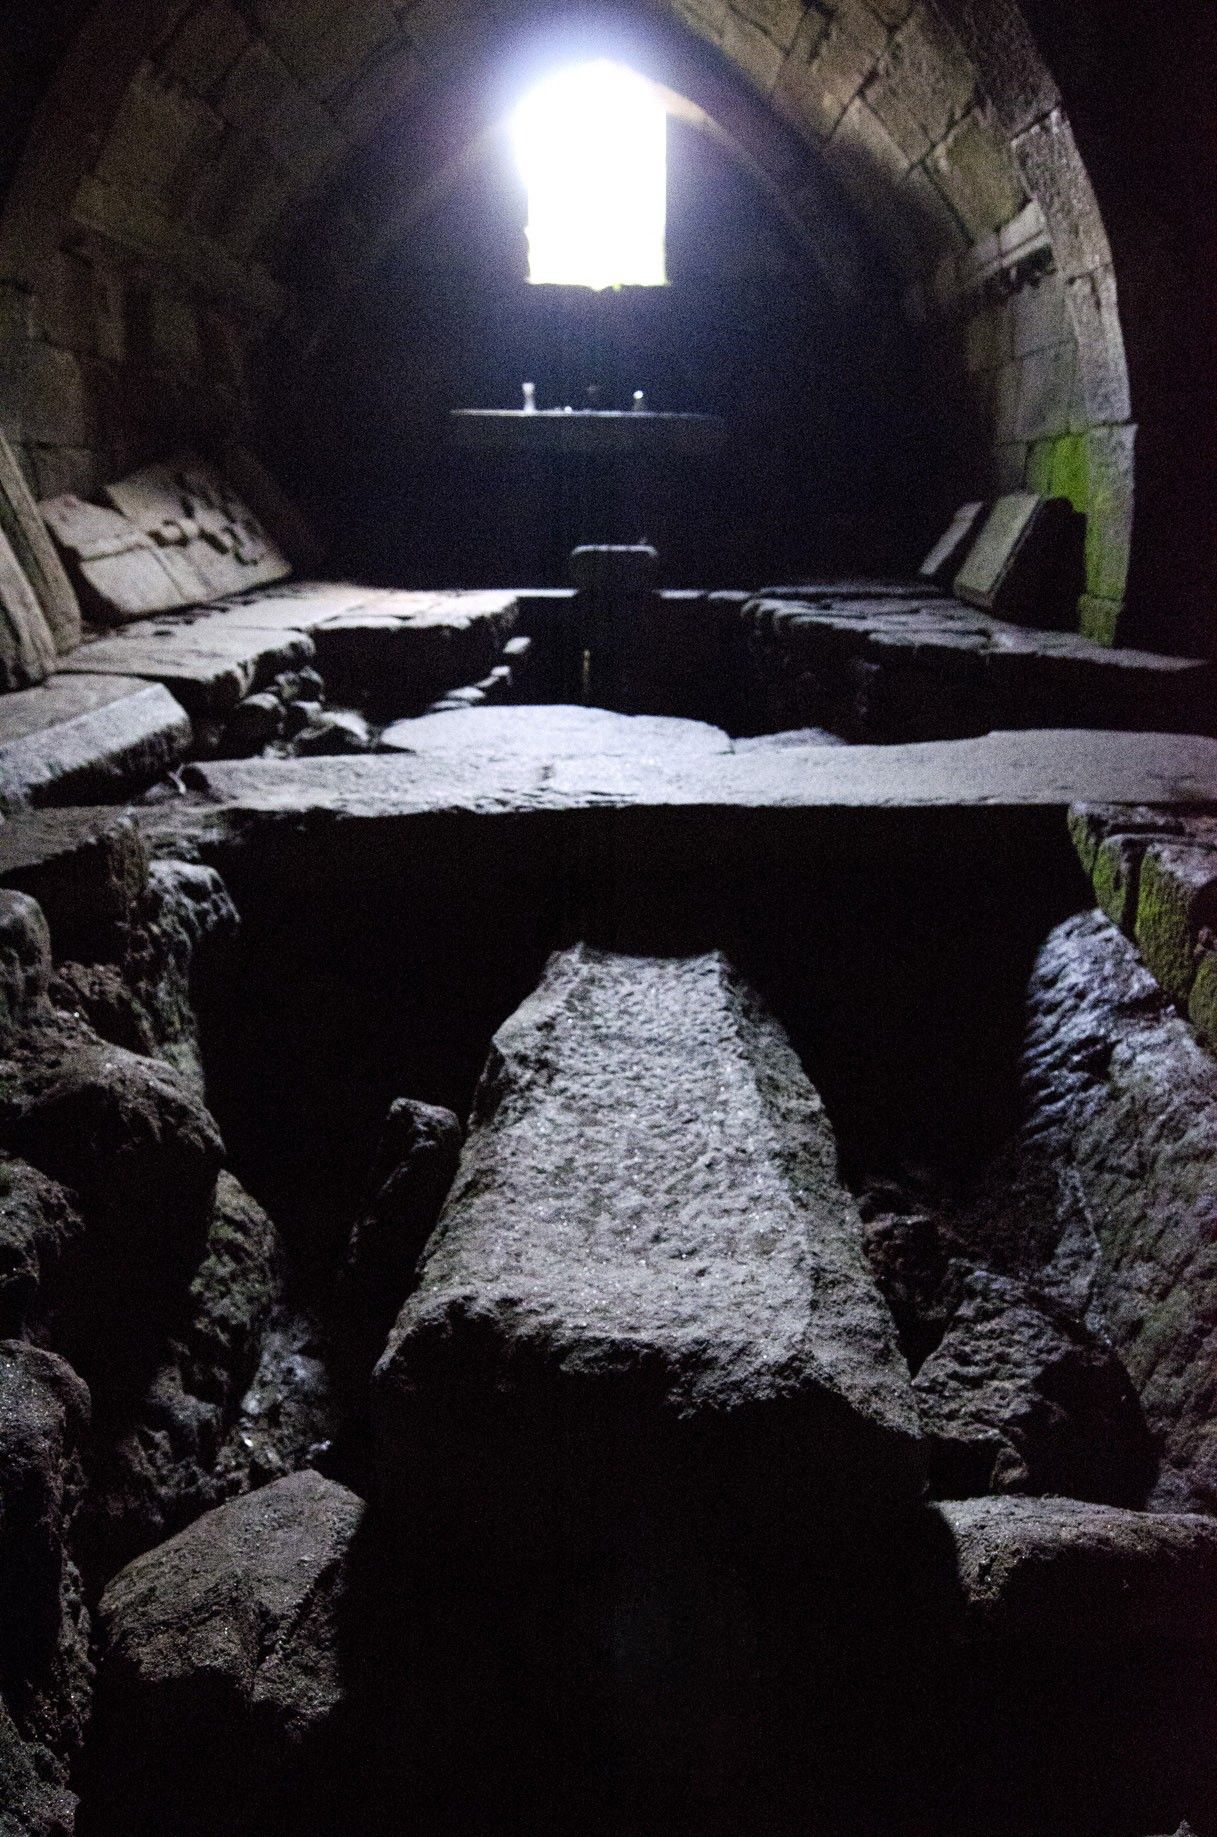 Interior de la cripta, con la sauna castrexa, conocida como el Horno de la Santa